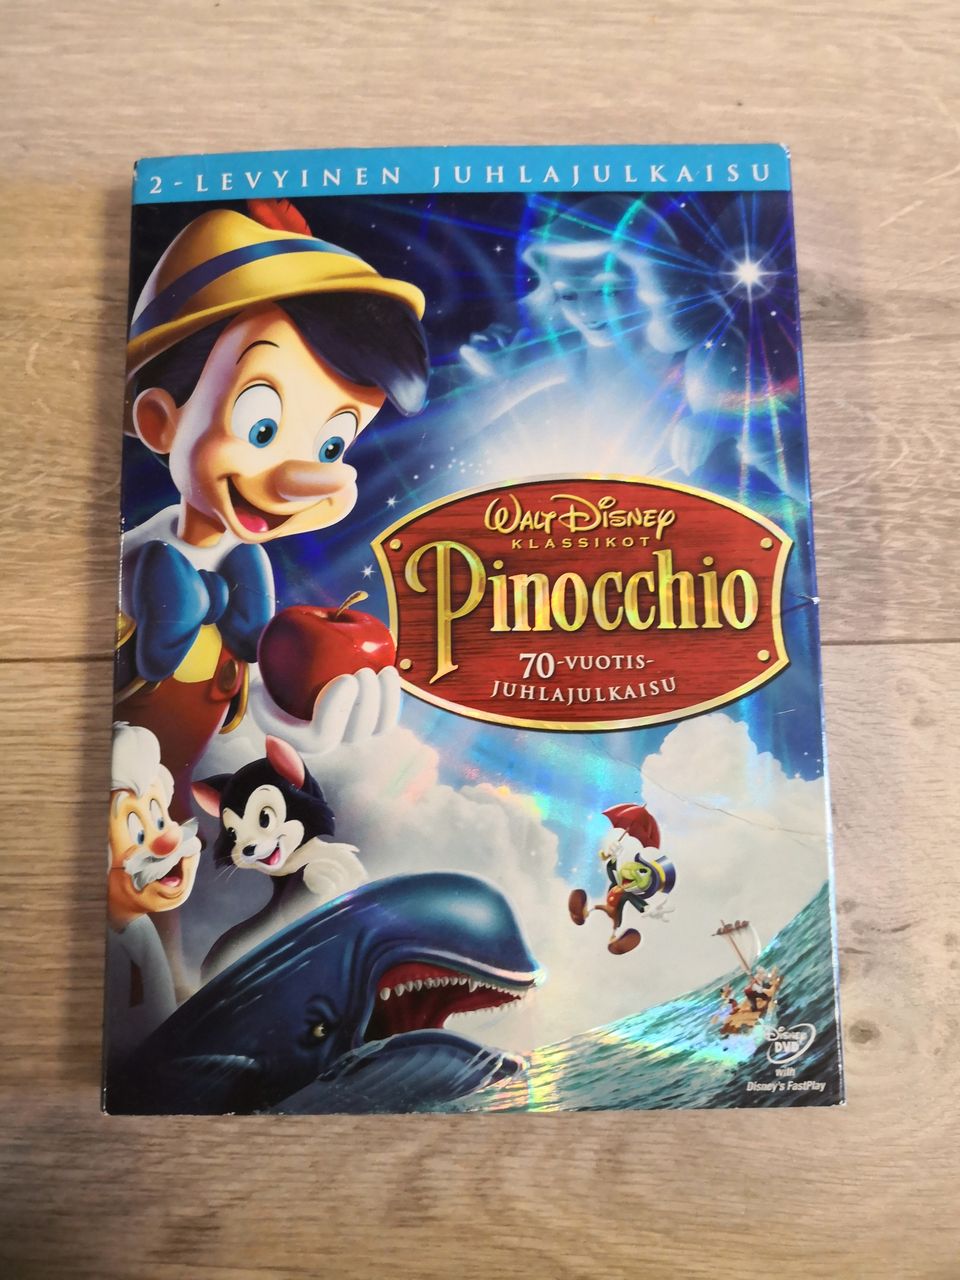 Disneyn Pinocchio 70-vuotis juhlajulkaisu DVD